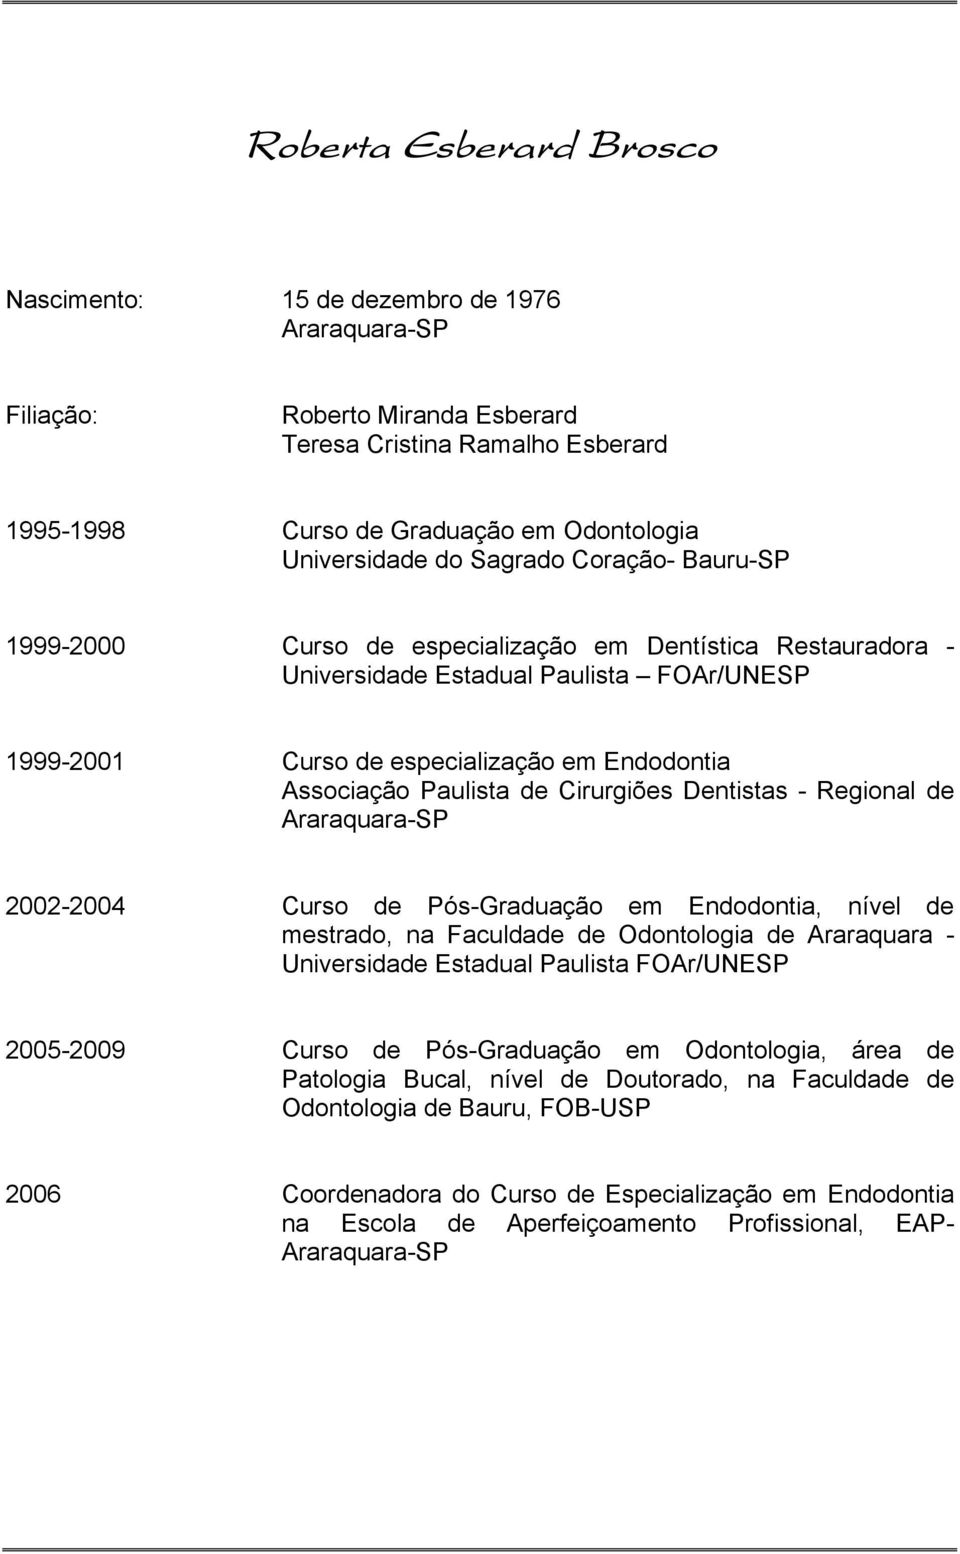 Paulista de Cirurgiões Dentistas - Regional de Araraquara-SP 2002-2004 Curso de Pós-Graduação em Endodontia, nível de mestrado, na Faculdade de Odontologia de Araraquara - Universidade Estadual